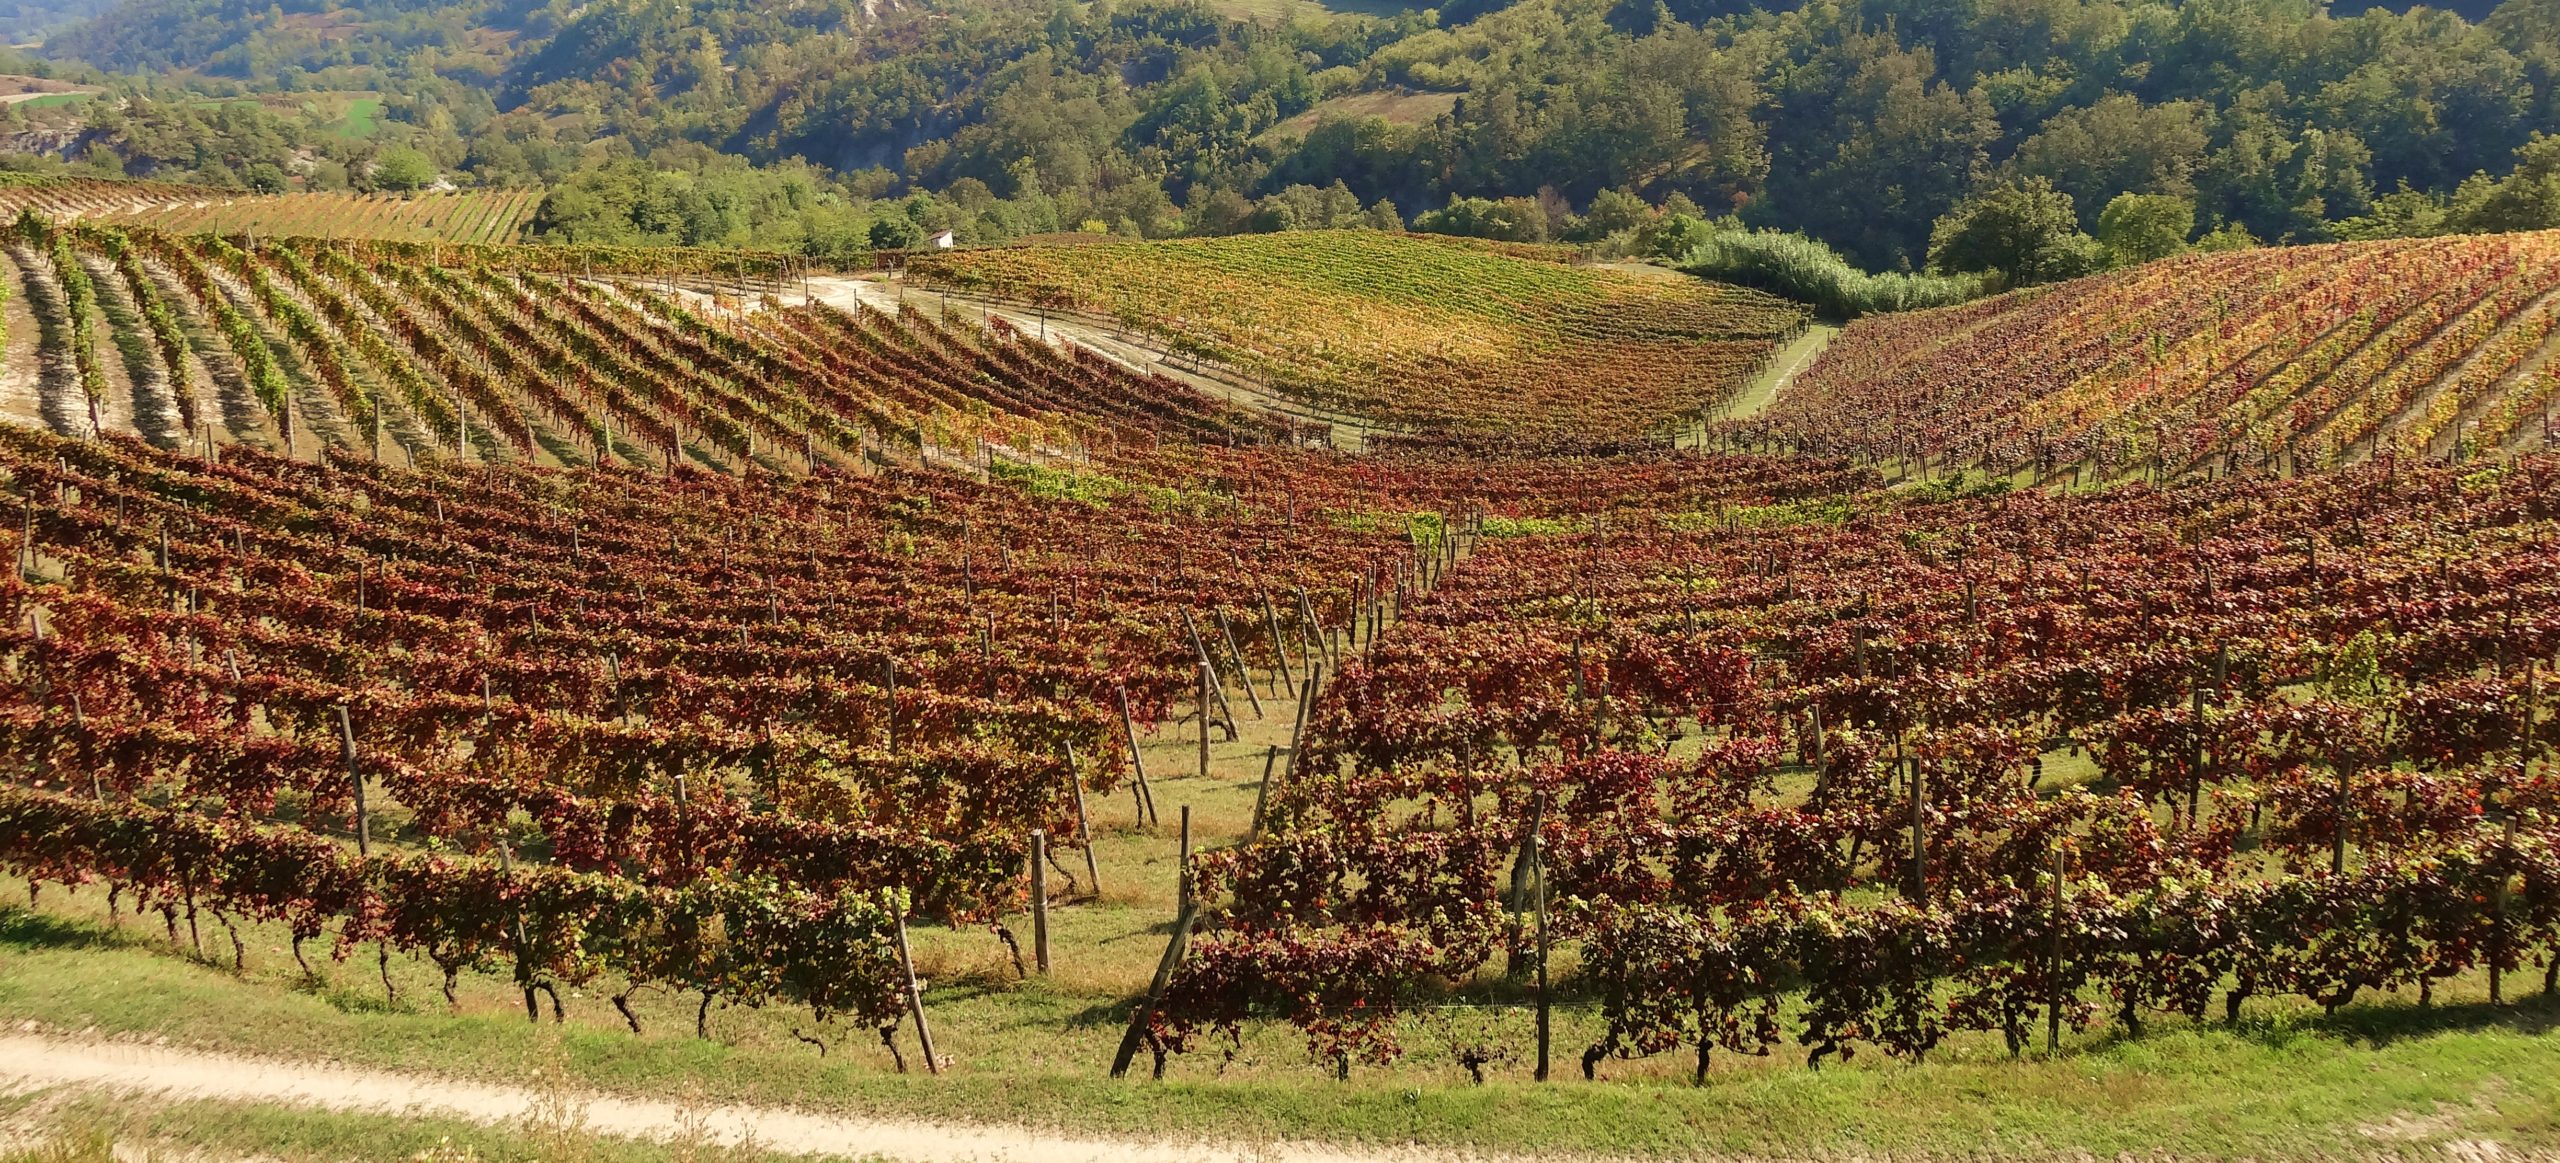 Piemonte wijnvakantie wijnregio